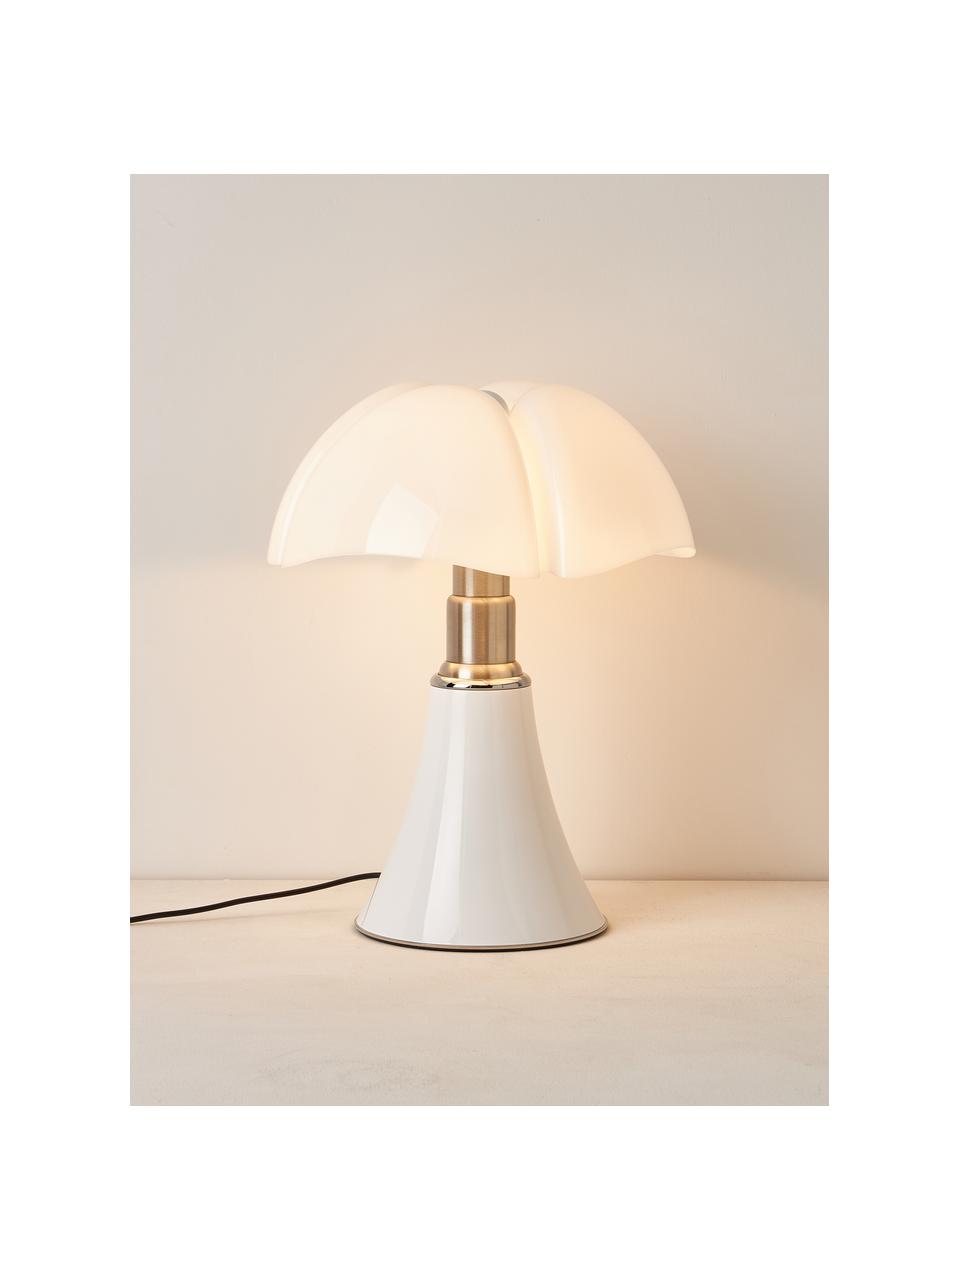 Grosse dimmbare LED-Tischlampe Pipistrello, höhenverstellbar, Weiss, glänzend, Ø 40 x H  50 - 62 cm